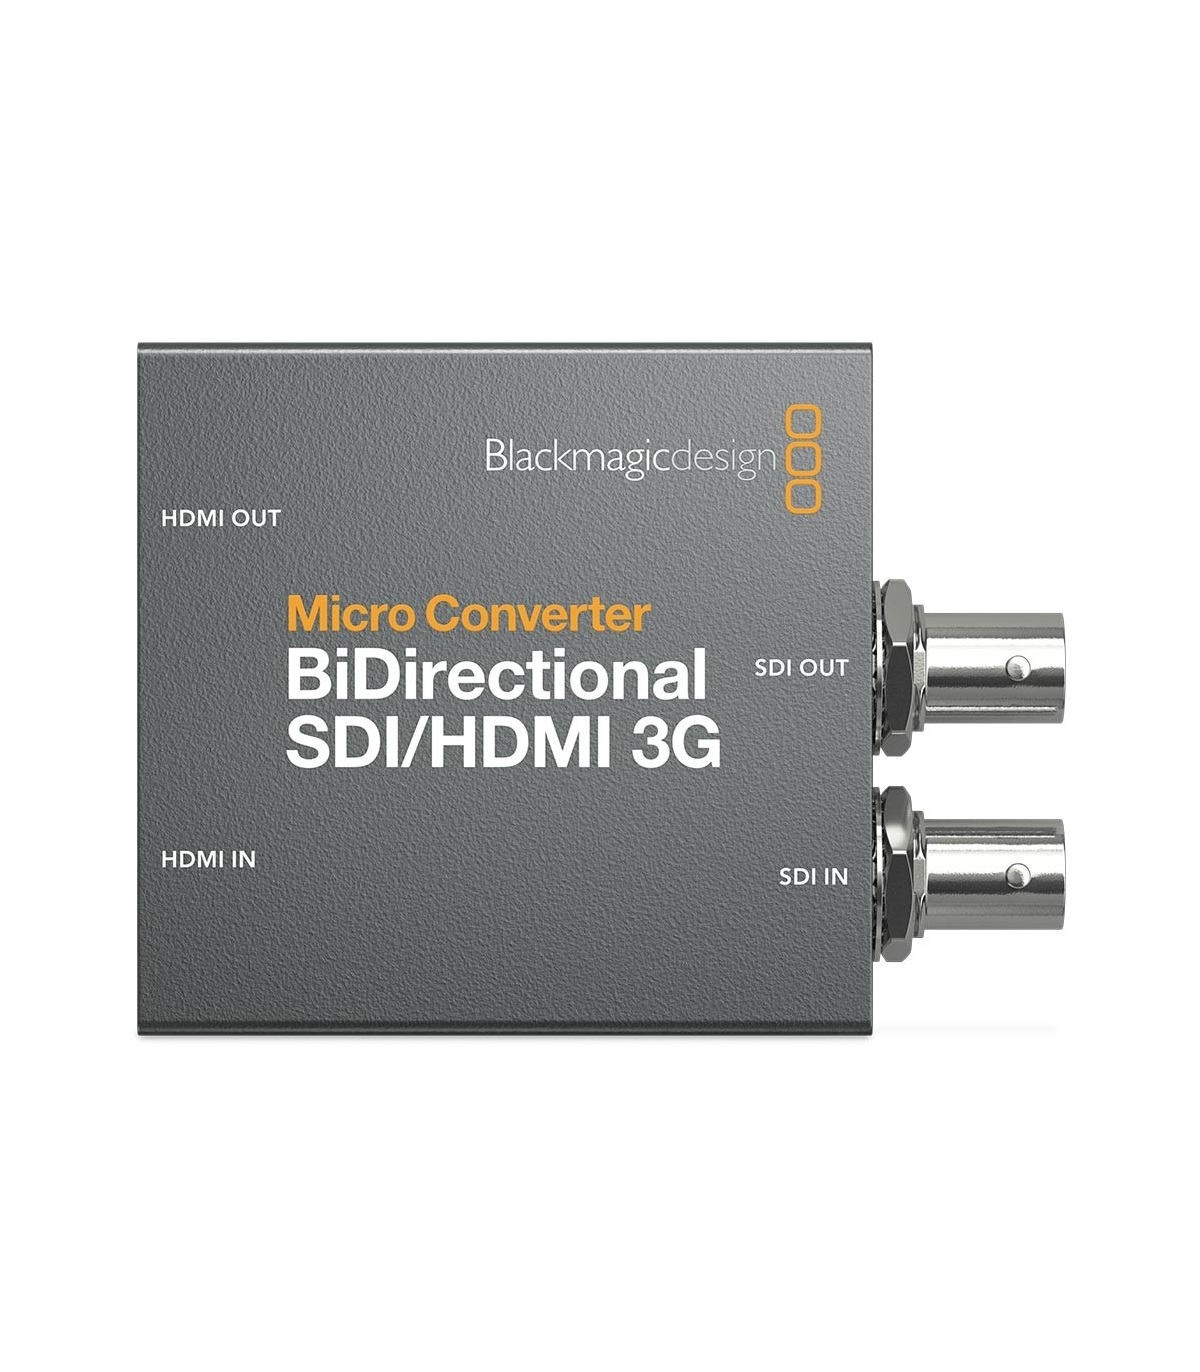 میکرو کانورتور بلک مجیک BiDirectional SDI/HDMI 3G